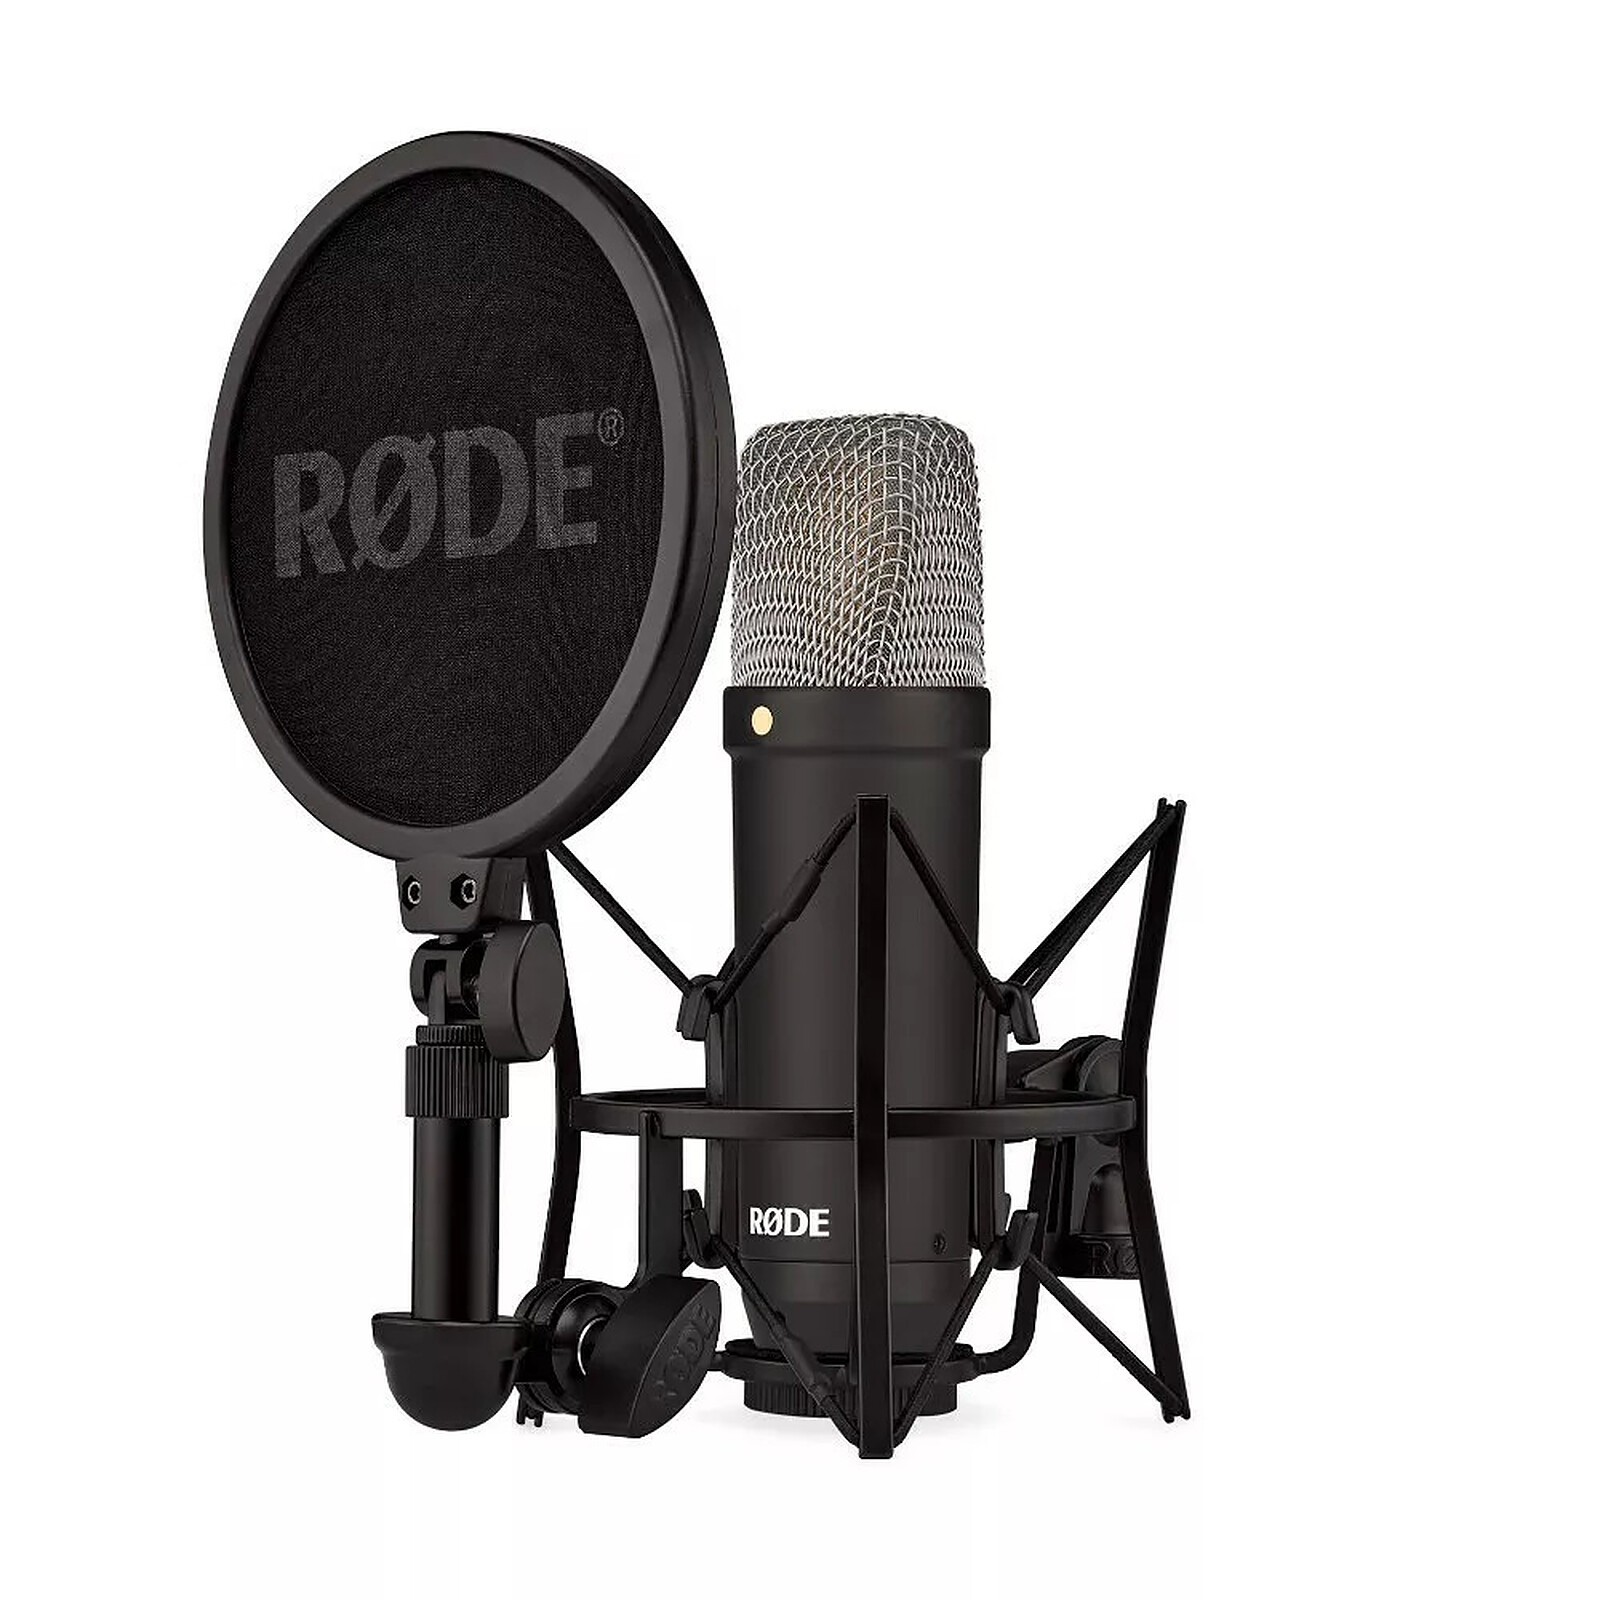 Blue Yeti Microphone (Argent) avec bras de perche, support antichocs et  filtre anti-pop (4 articles), USB